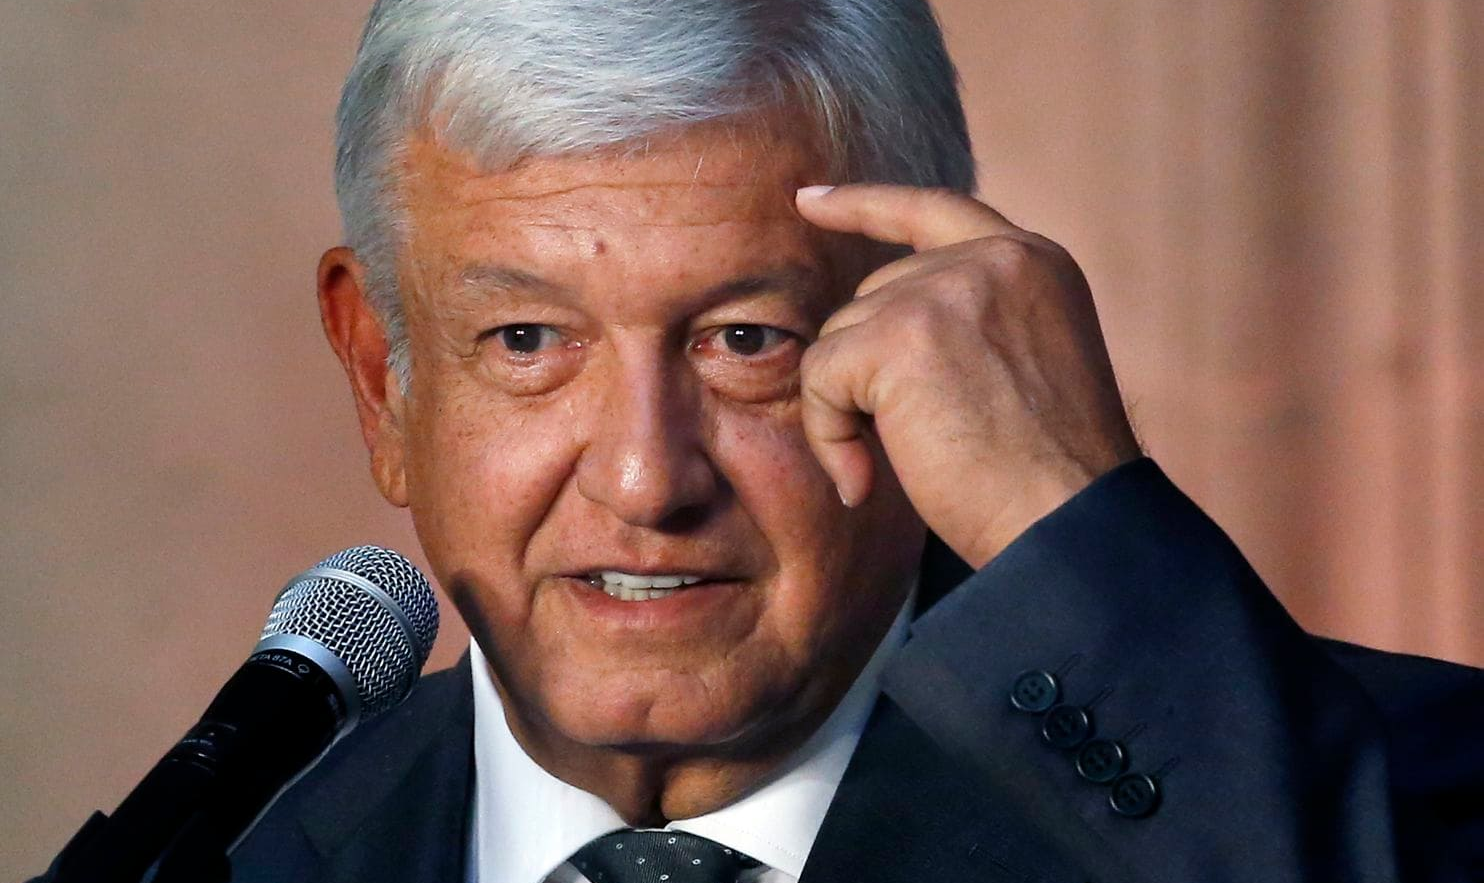 Desde antes de assumir o poder o presidente López Obrador tem sido sujeito de críticas diversas, e em sua maior parte irresponsáveis